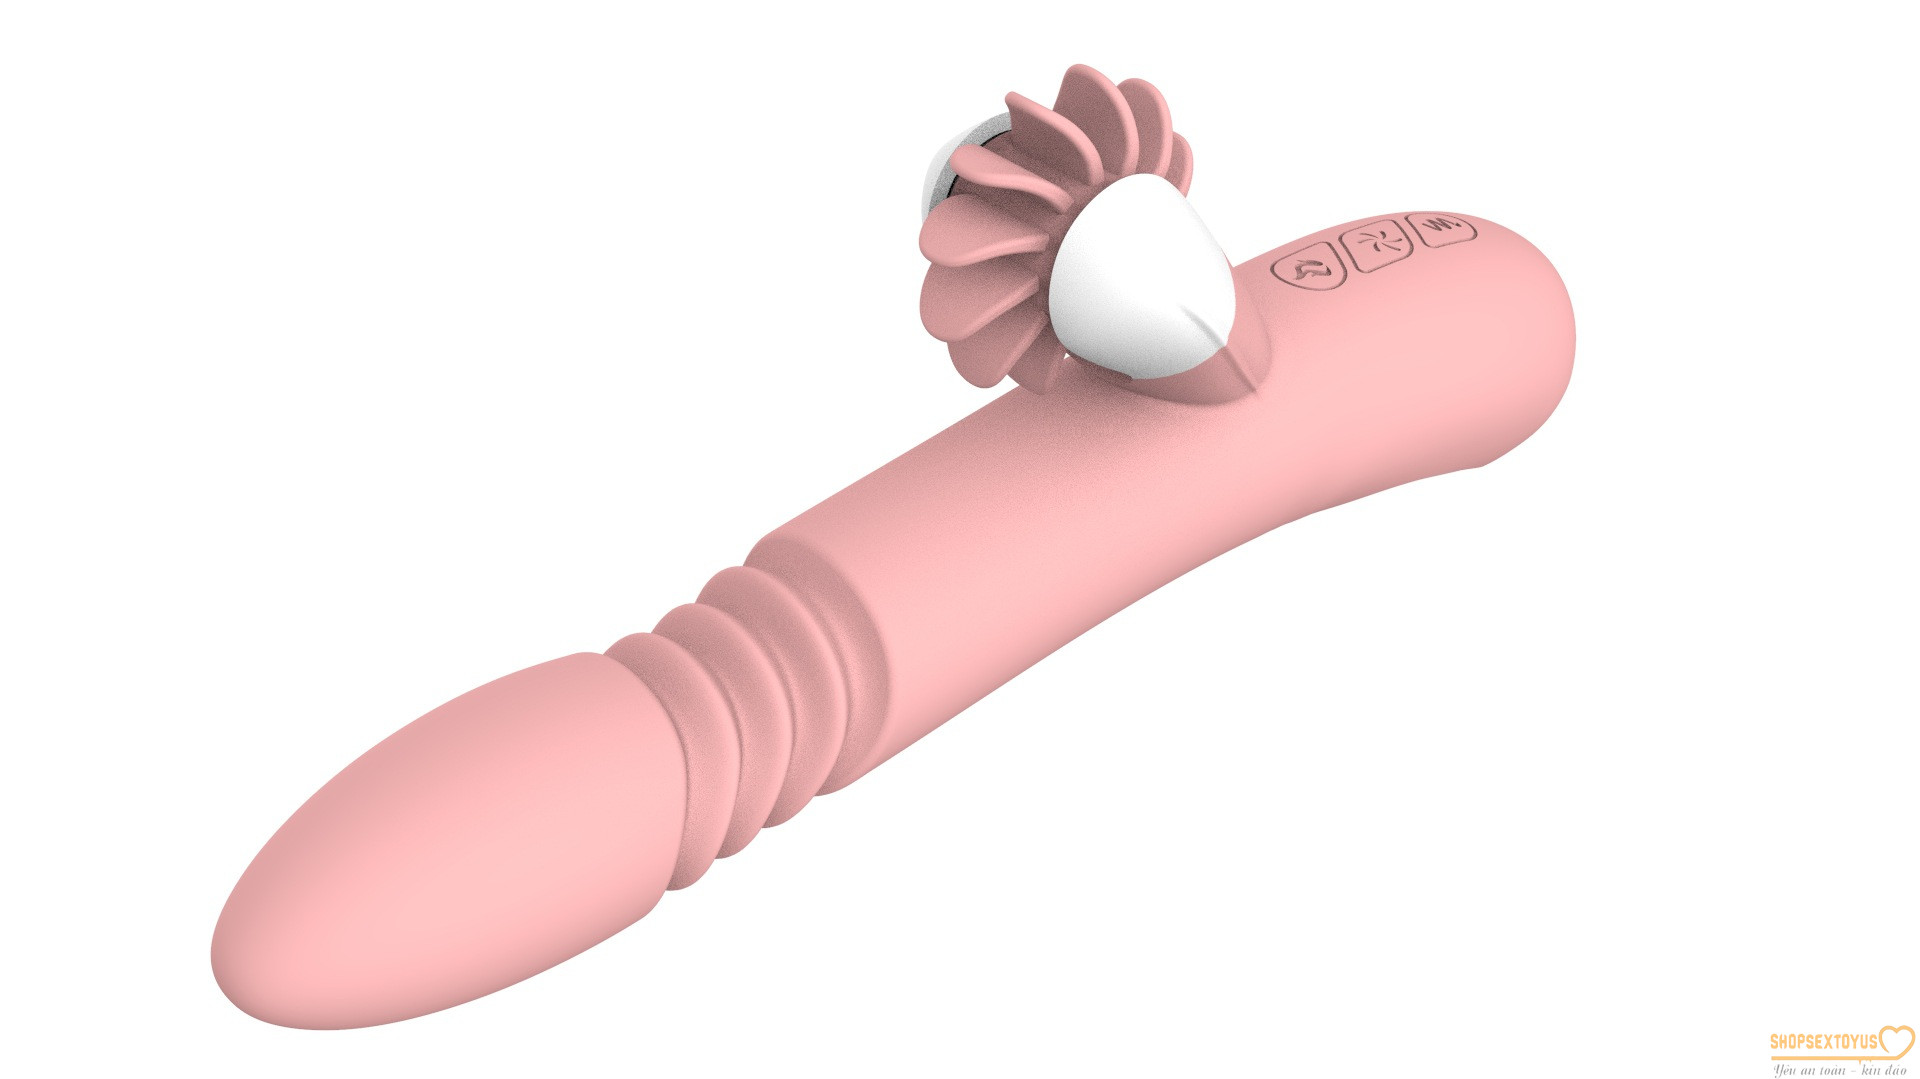 Dương vật giả lưỡi liếm Manokelle Female Vibrator – DVCT 423| đồ chơi tình ái máy rung âm đạo